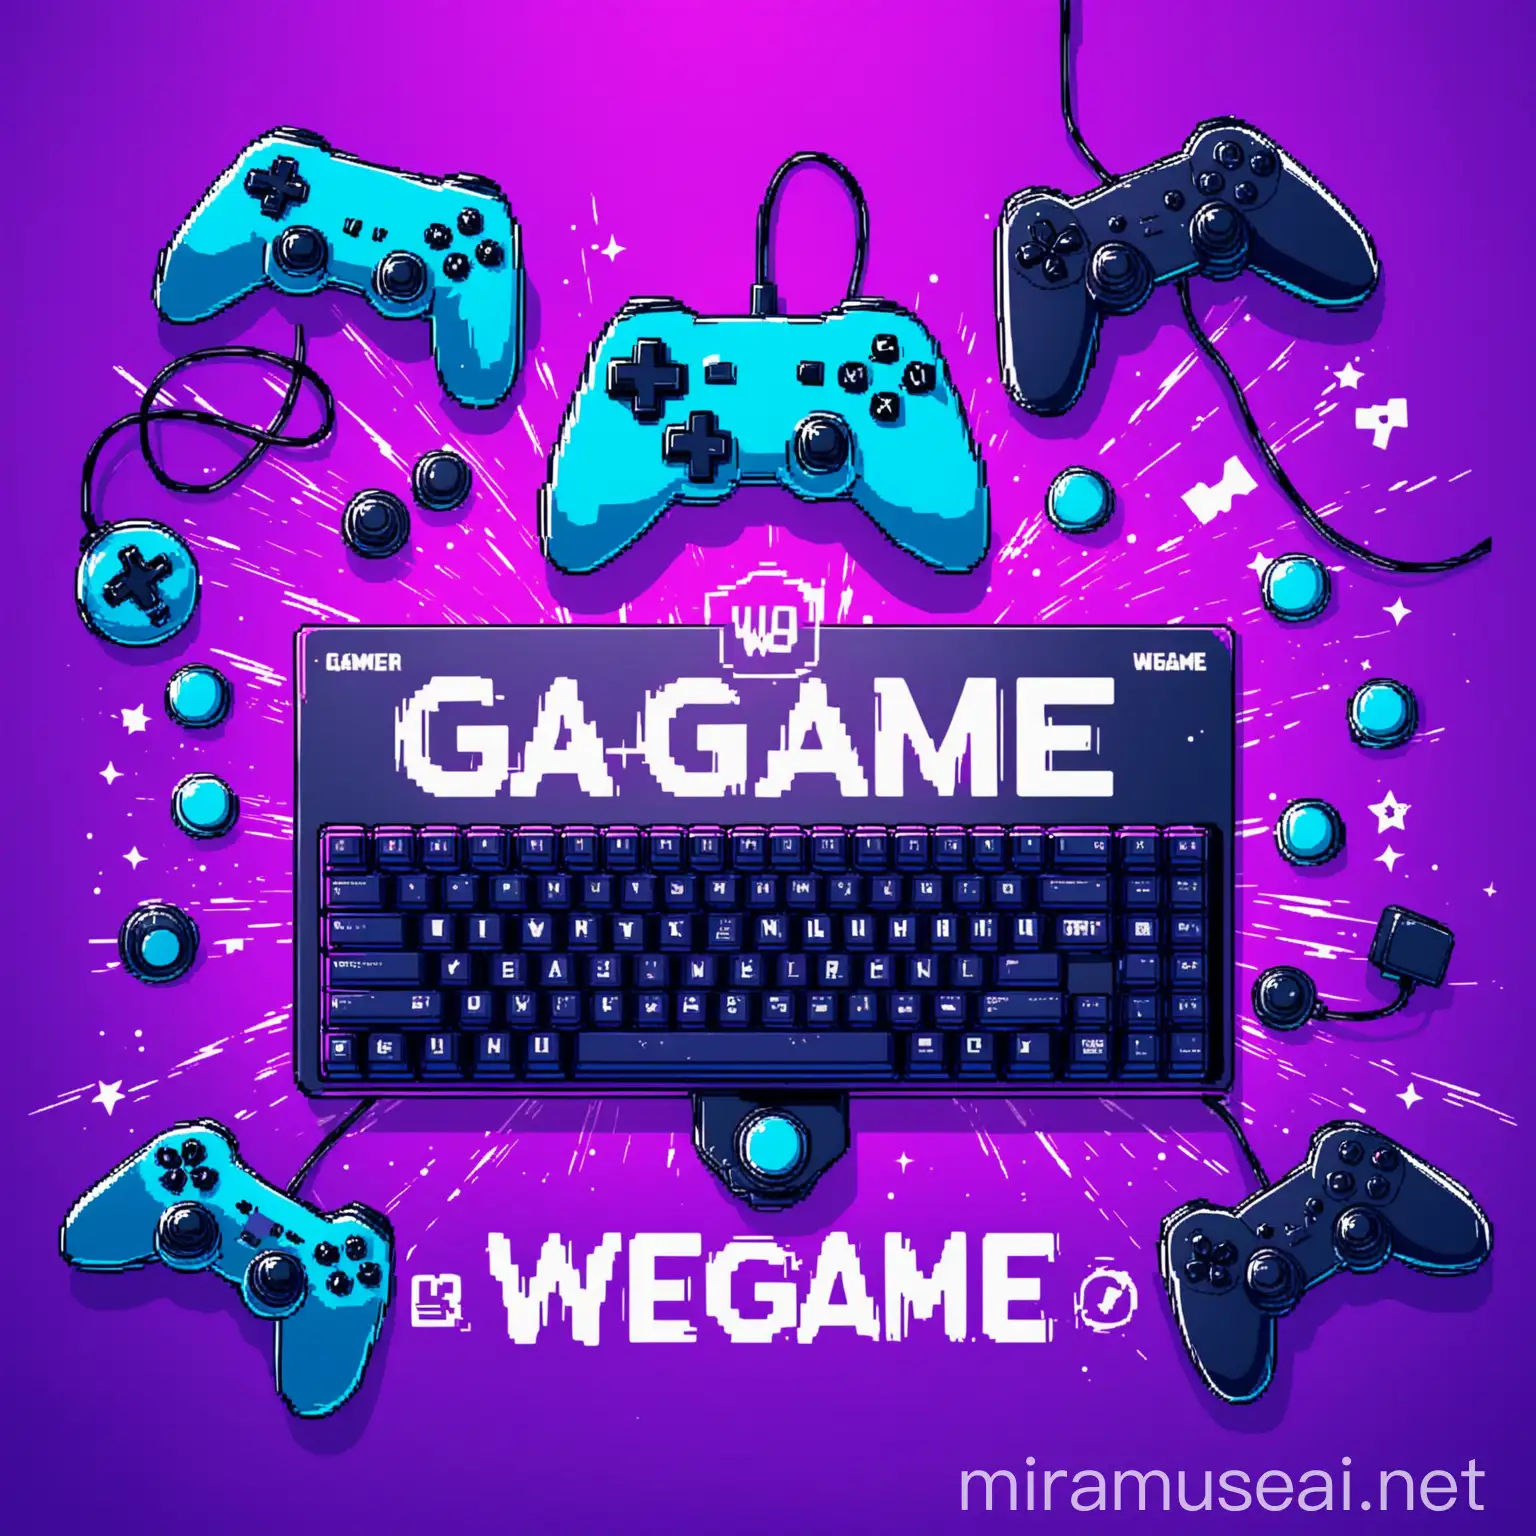  цвета фона фиолетовый с голубым, заголовок сверху на картинке WeGame, онлайн игры джойстик, клавиатура, геймеры, 